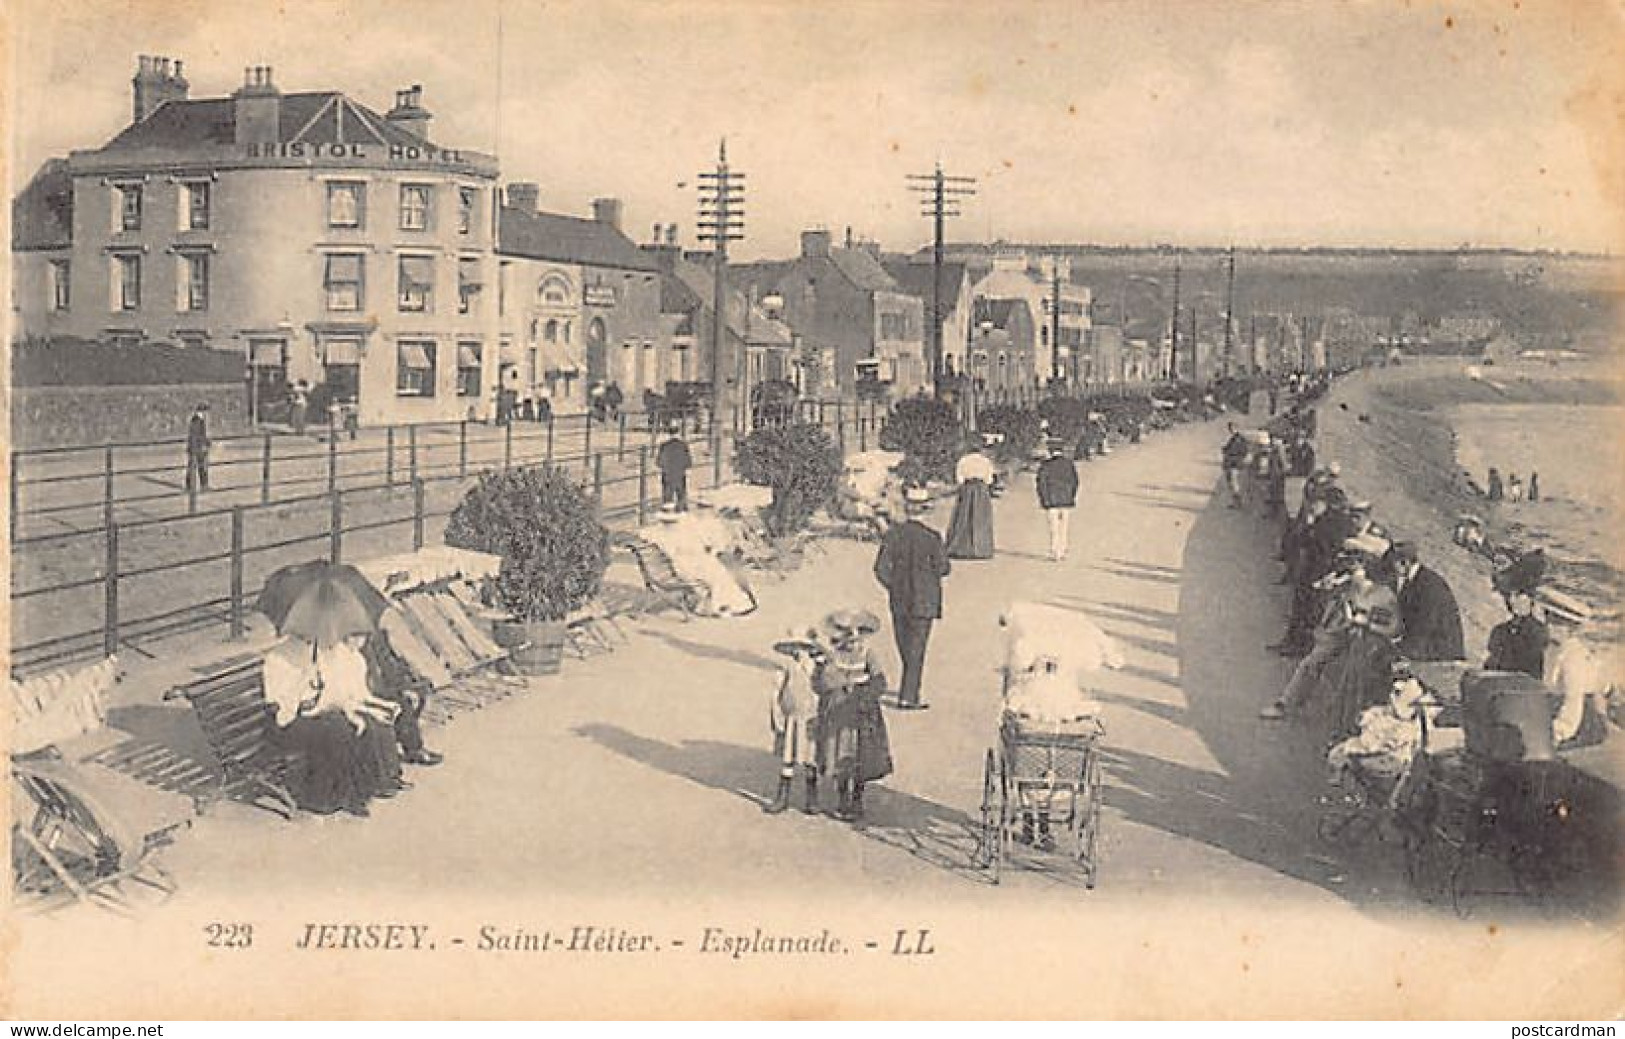 Jersey - ST. HELIER - Esplanade - Publ. L.L. Levy 223 - St. Helier